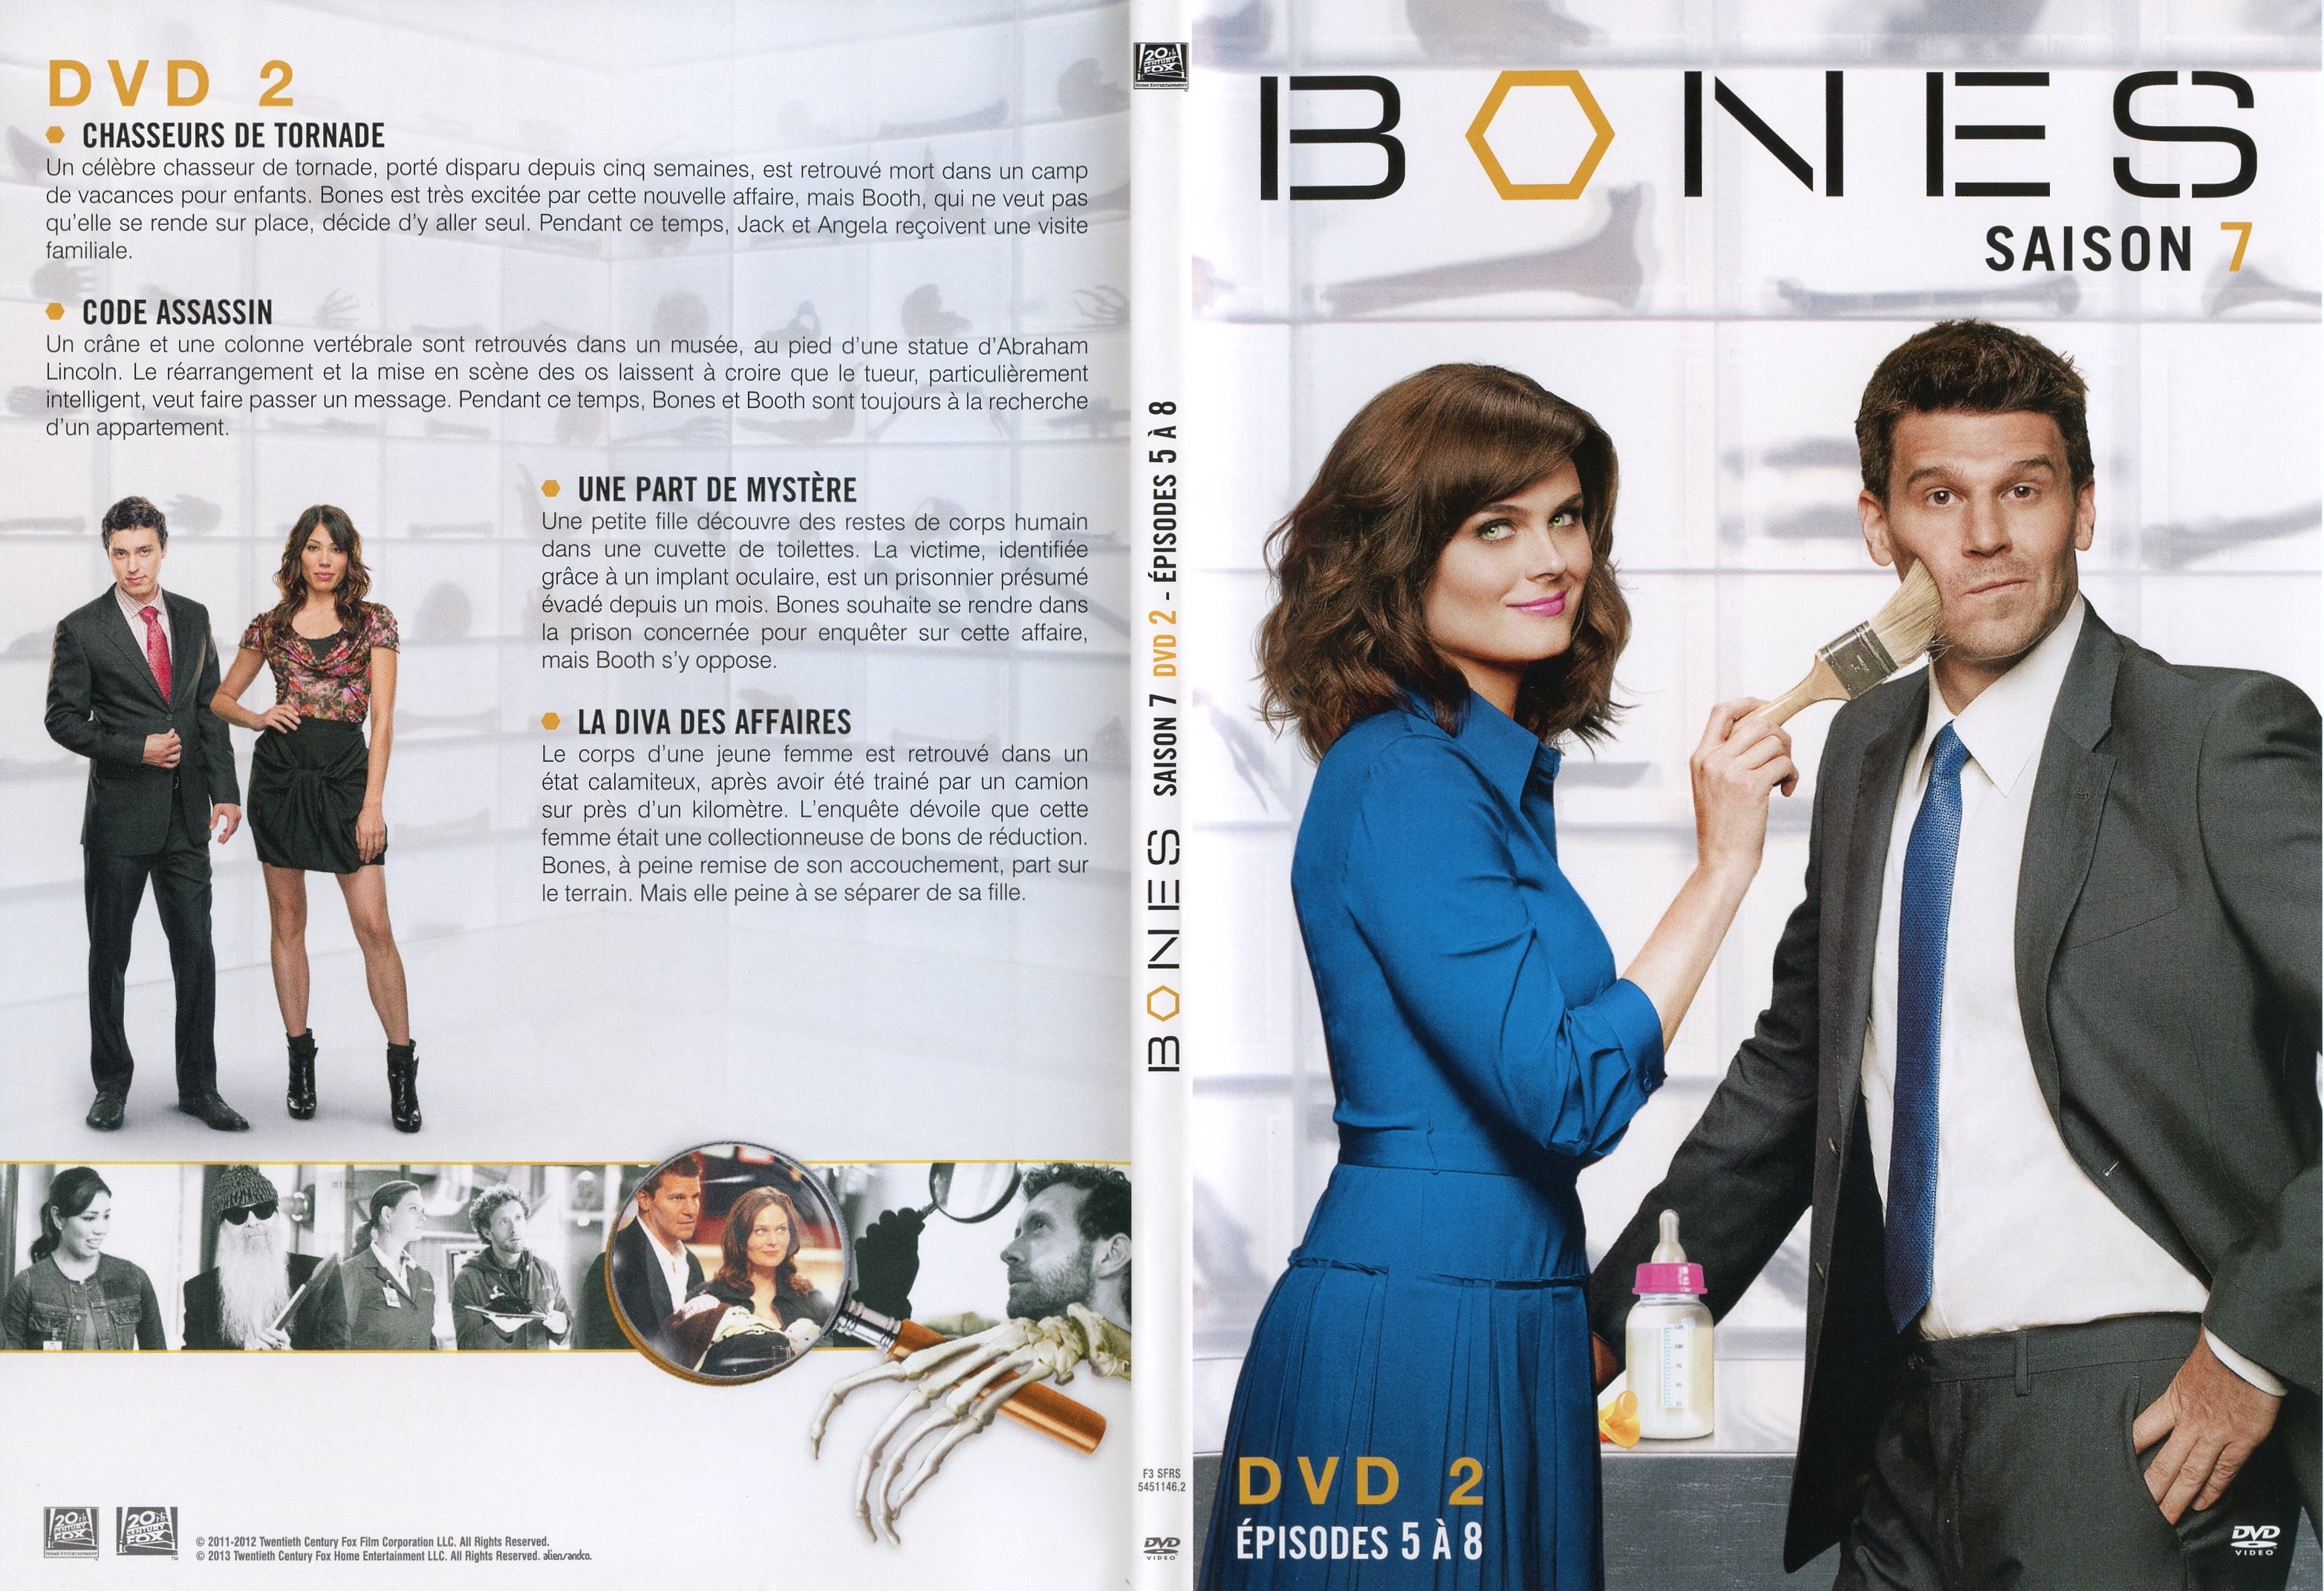 Jaquette DVD Bones Saison 7 DVD 2